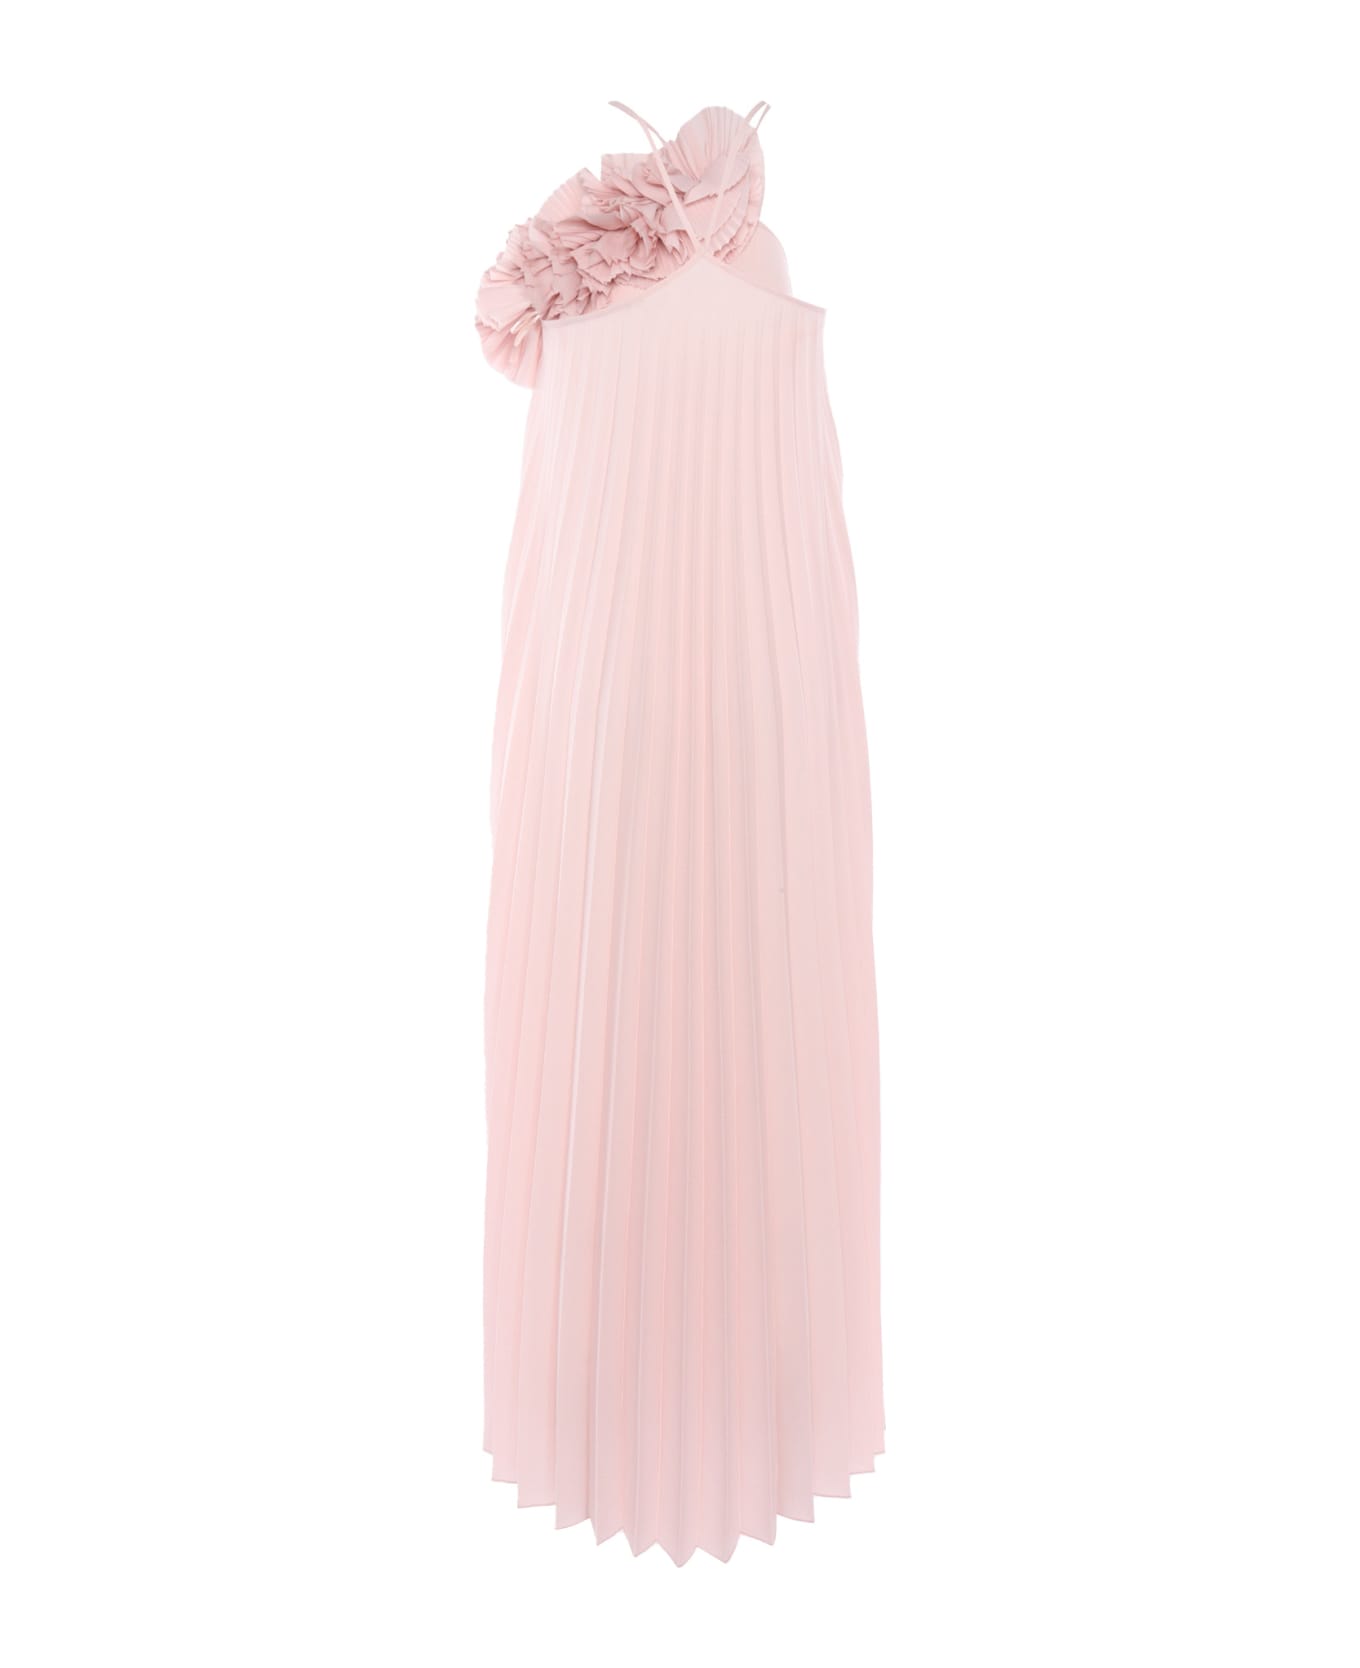 Parosh Ling Cand Pink Dress - PINK